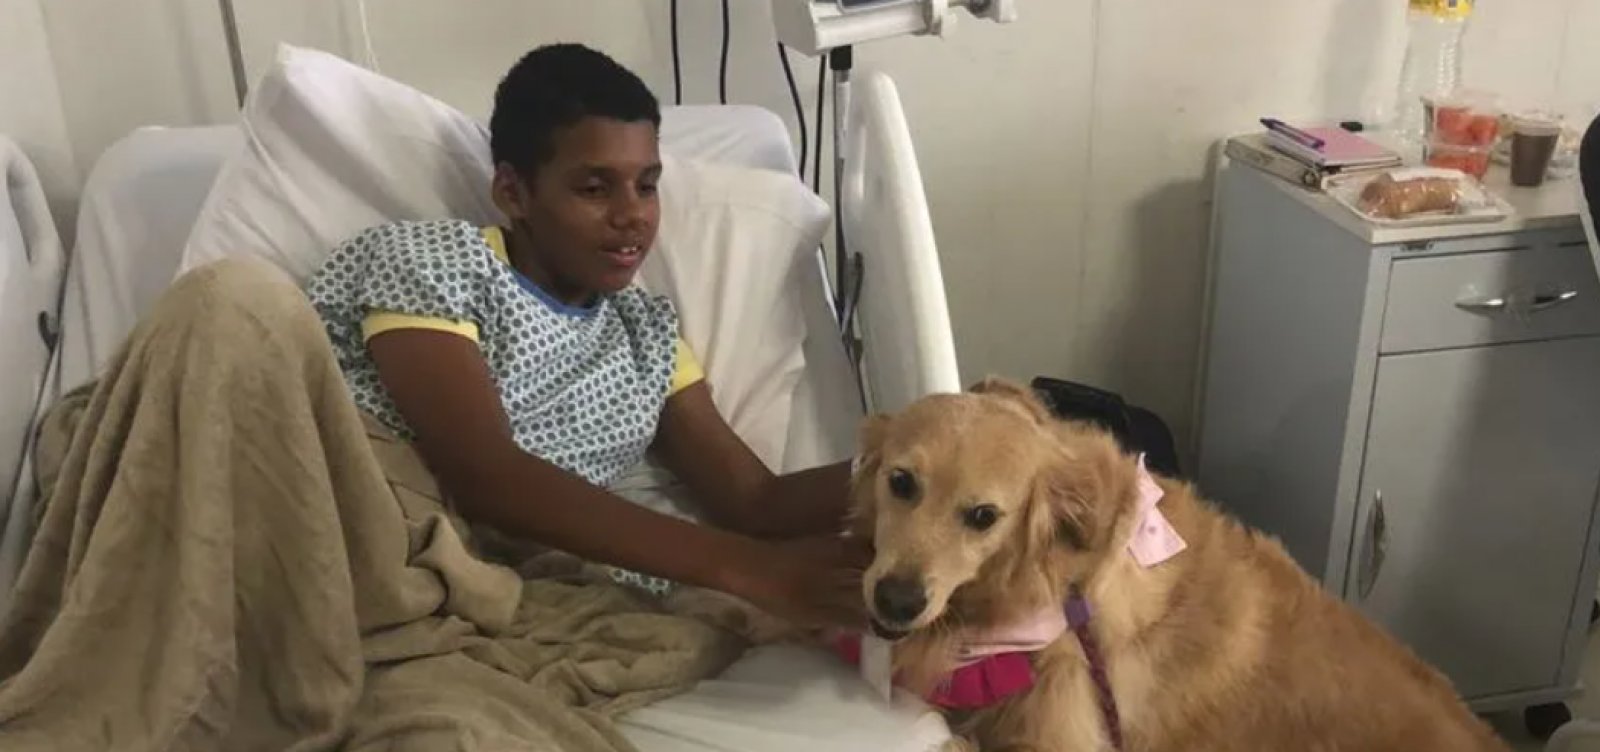 Hospital Ortopédico do Estado passa a contar com terapia assistida por animais